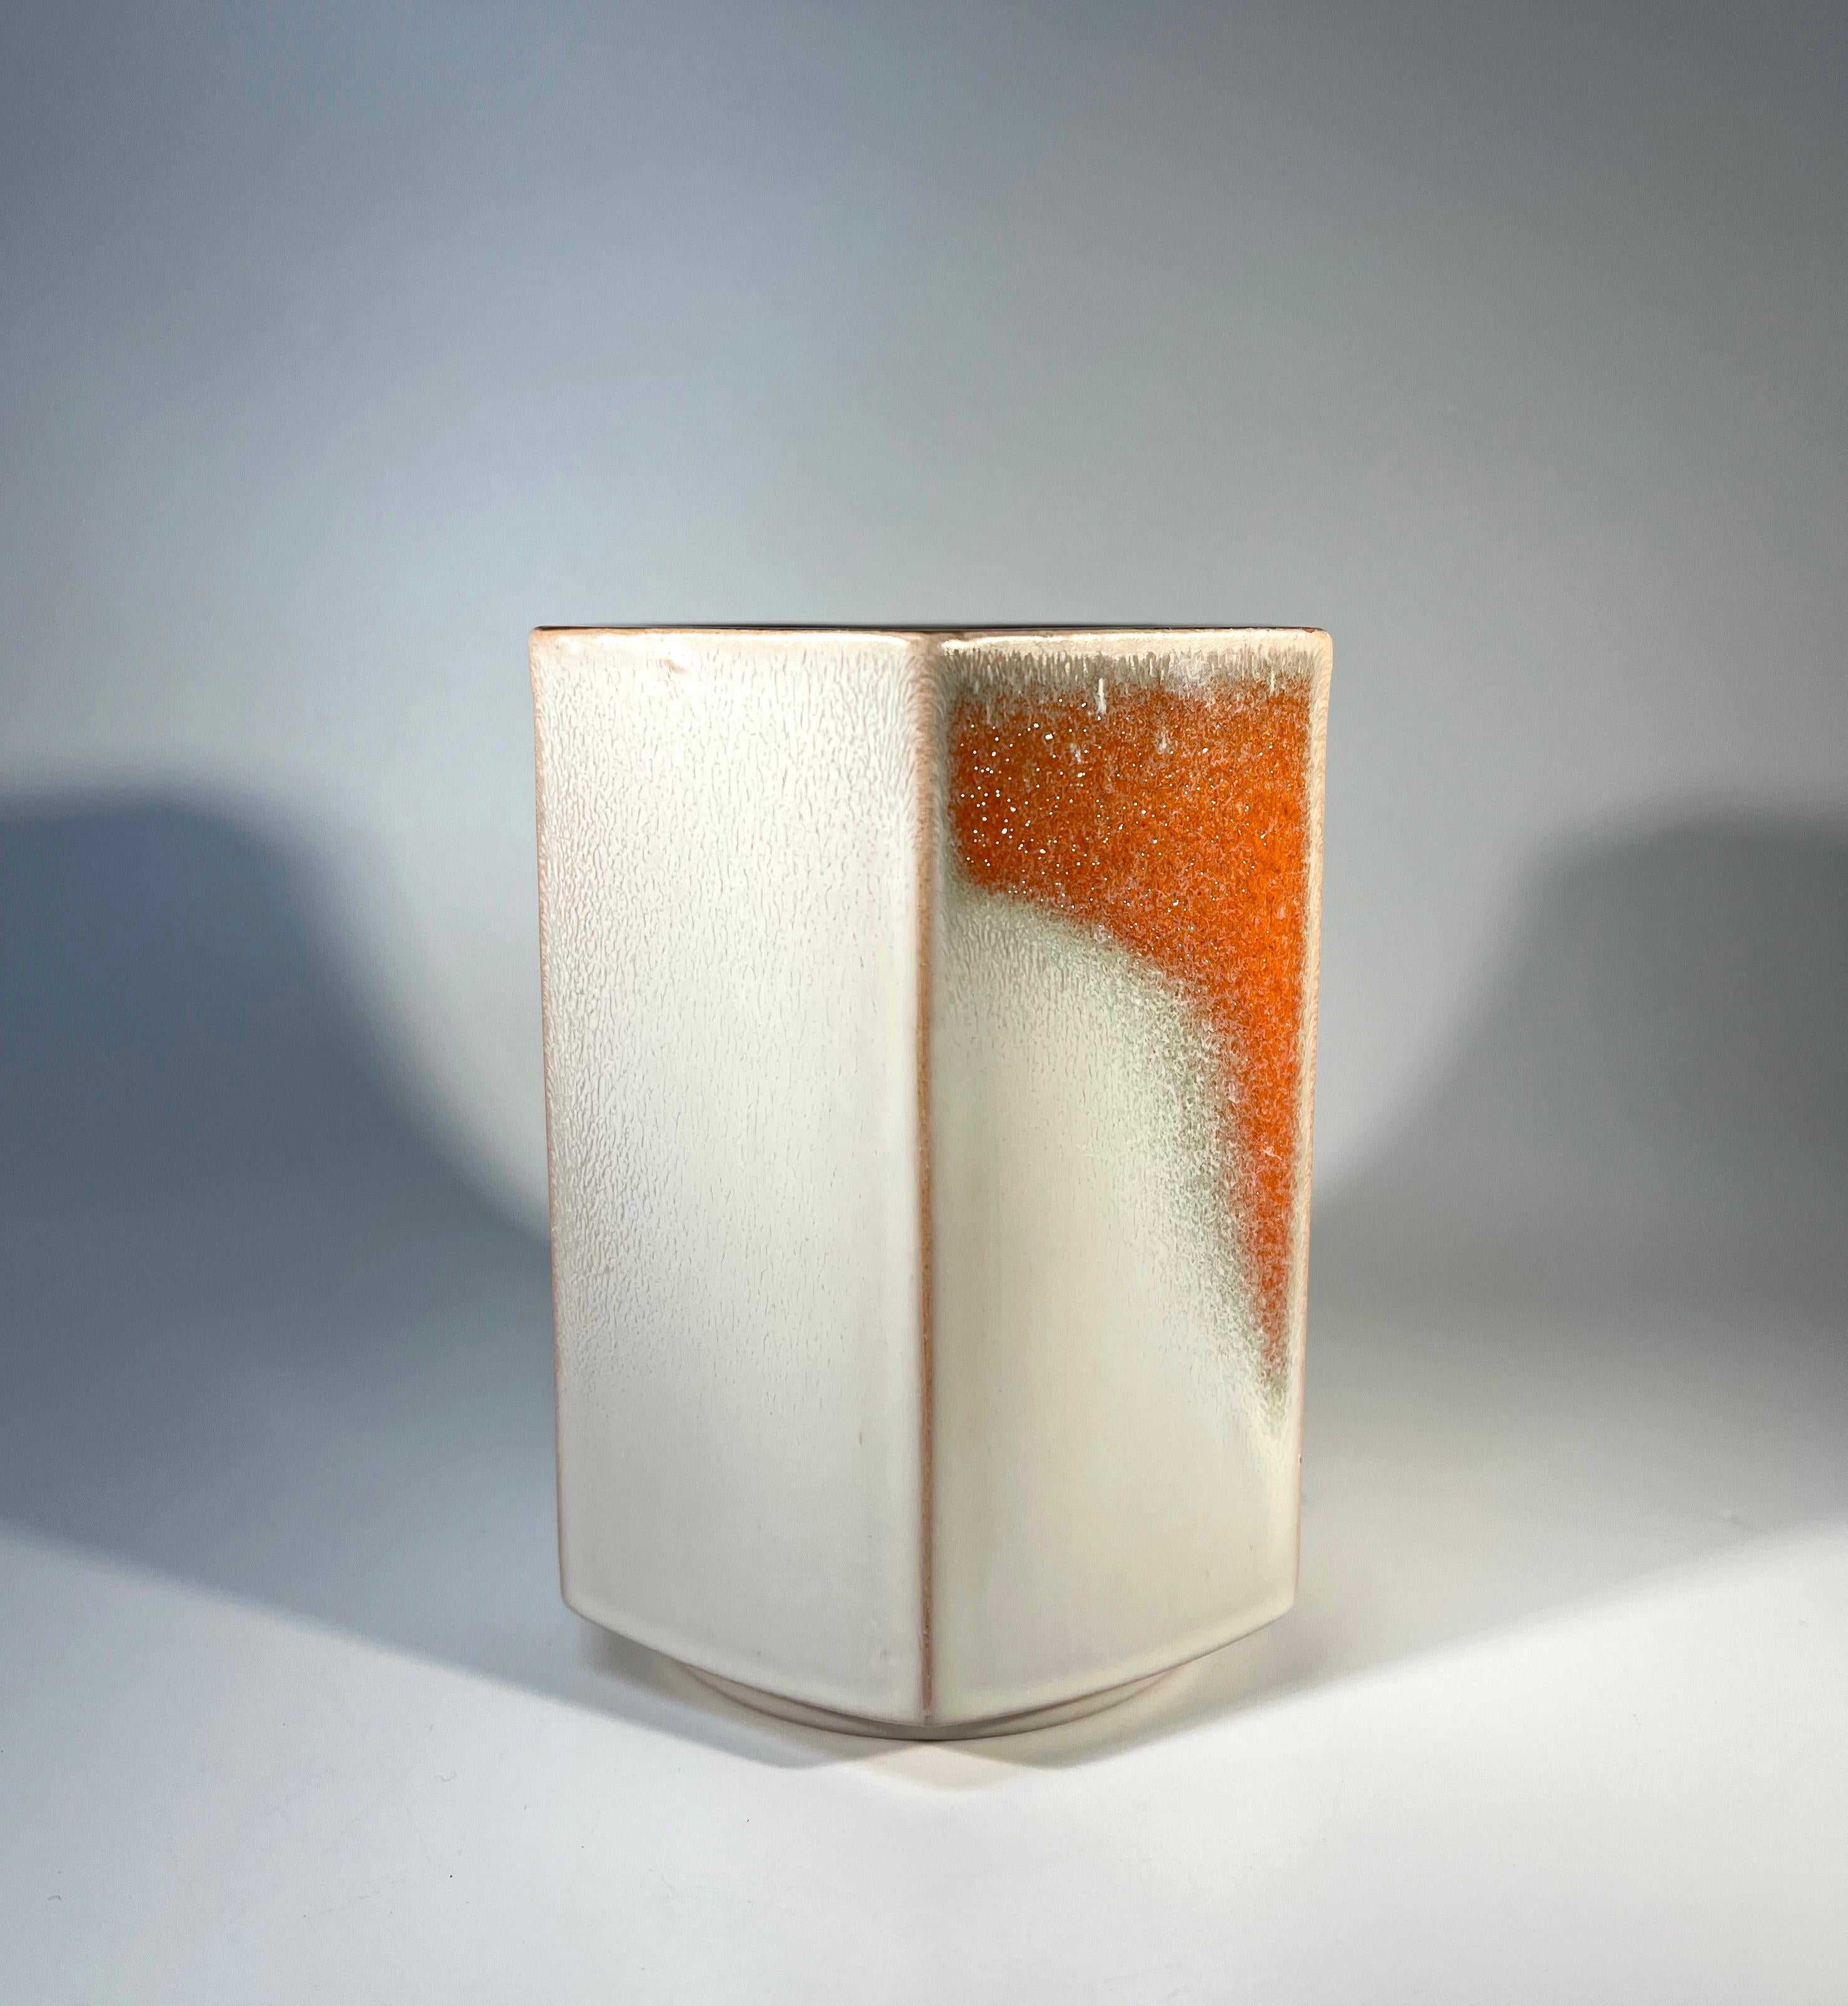 Danish Hexagonal Ceramic Vase By Knabstrup Of Denmark, c1960 For Sale